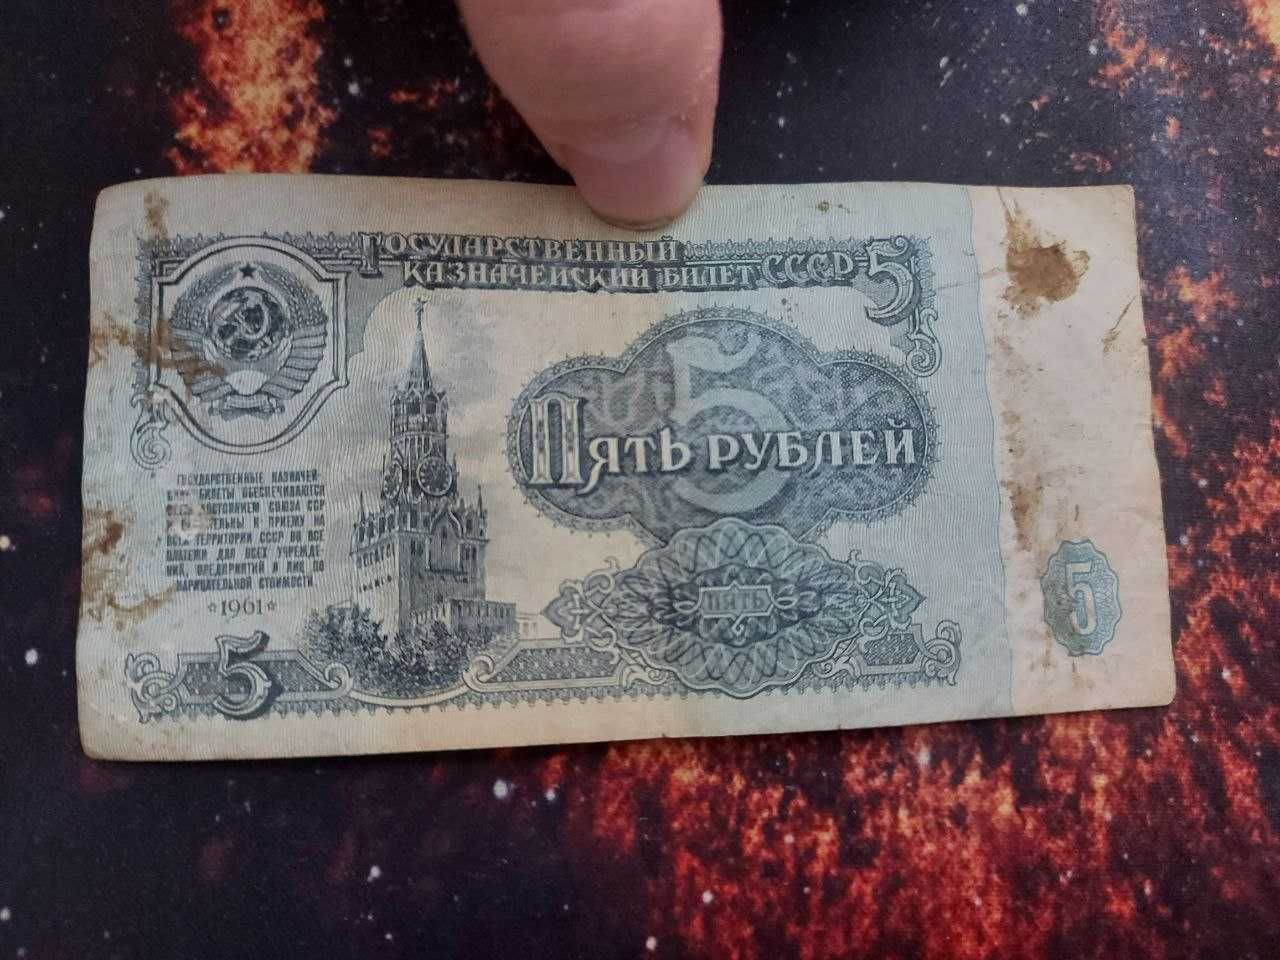 5 советских рублей 1961 года бумажные